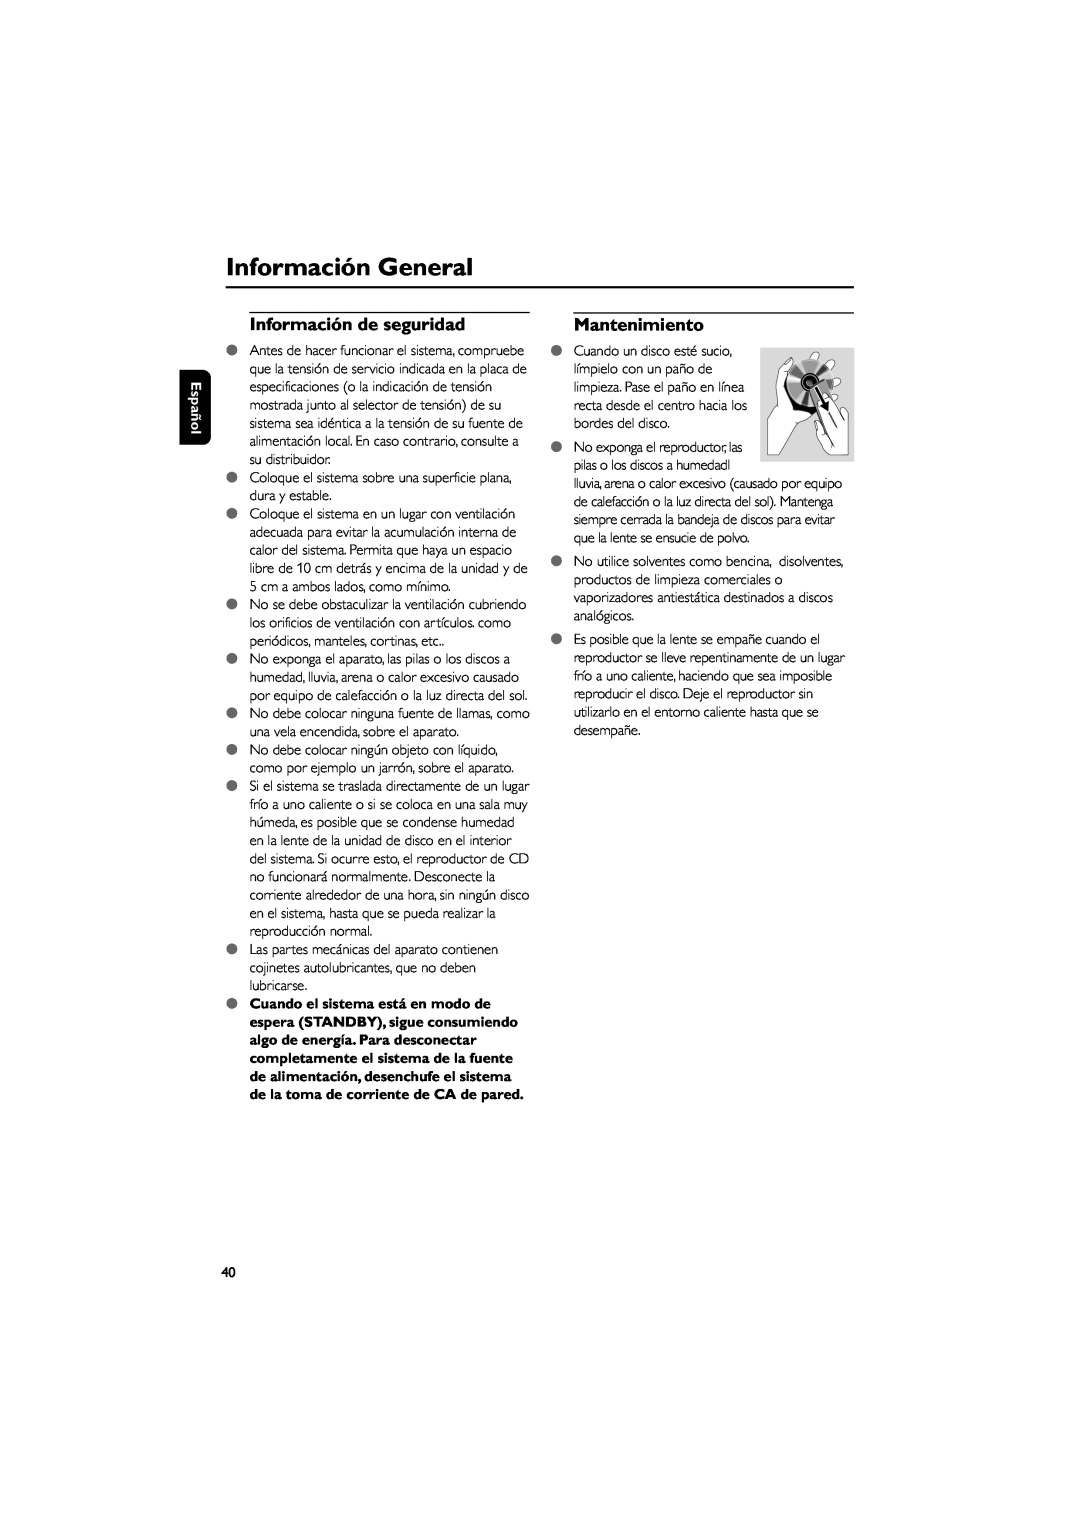 Philips MCD139 user manual Información de seguridad, Mantenimiento, Información General, Español 